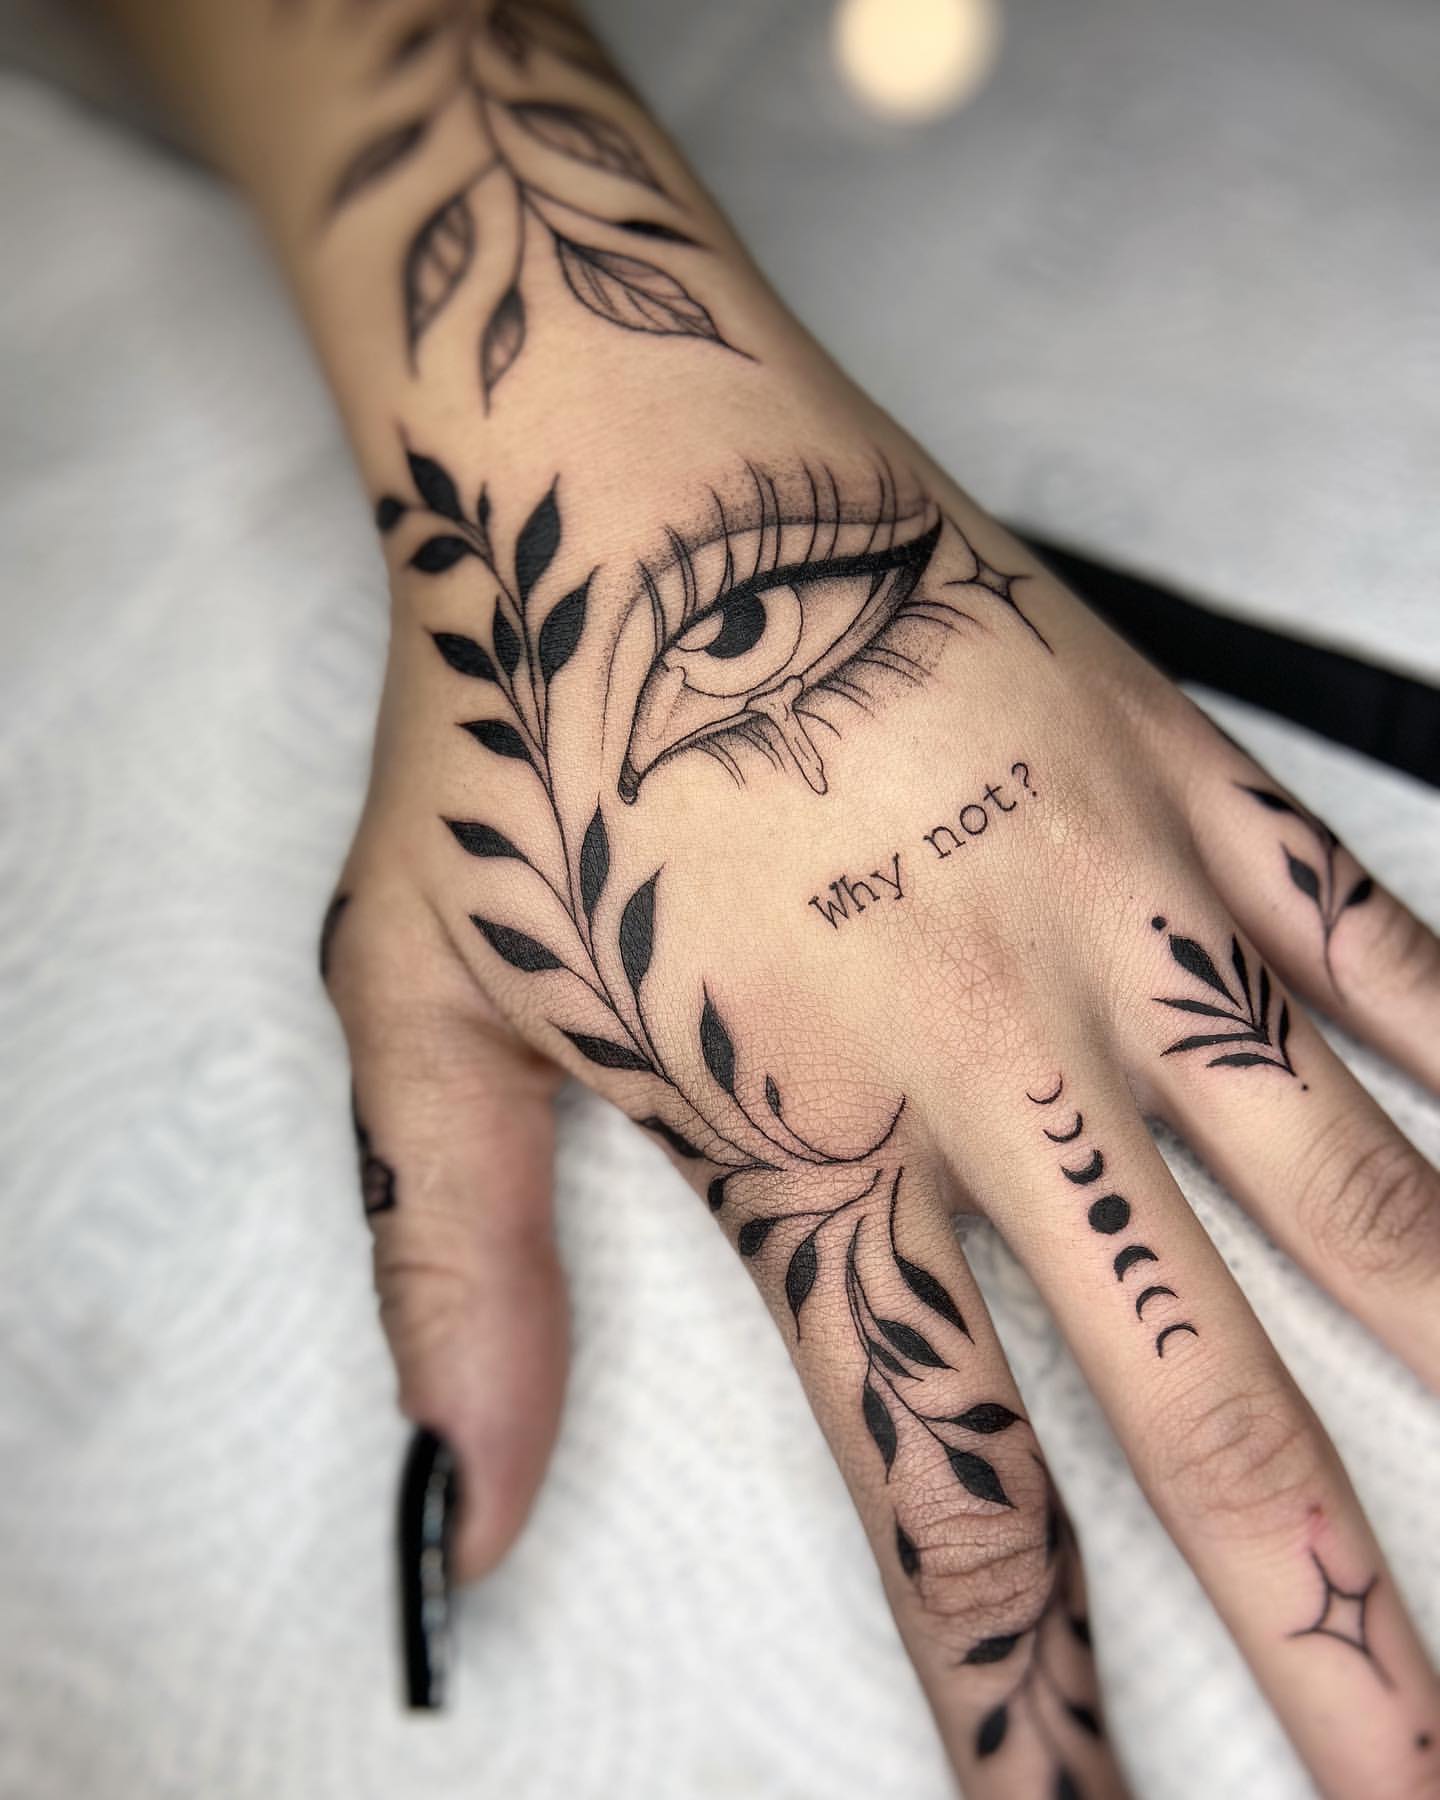 Ring Finger Tattoo Ideas 14